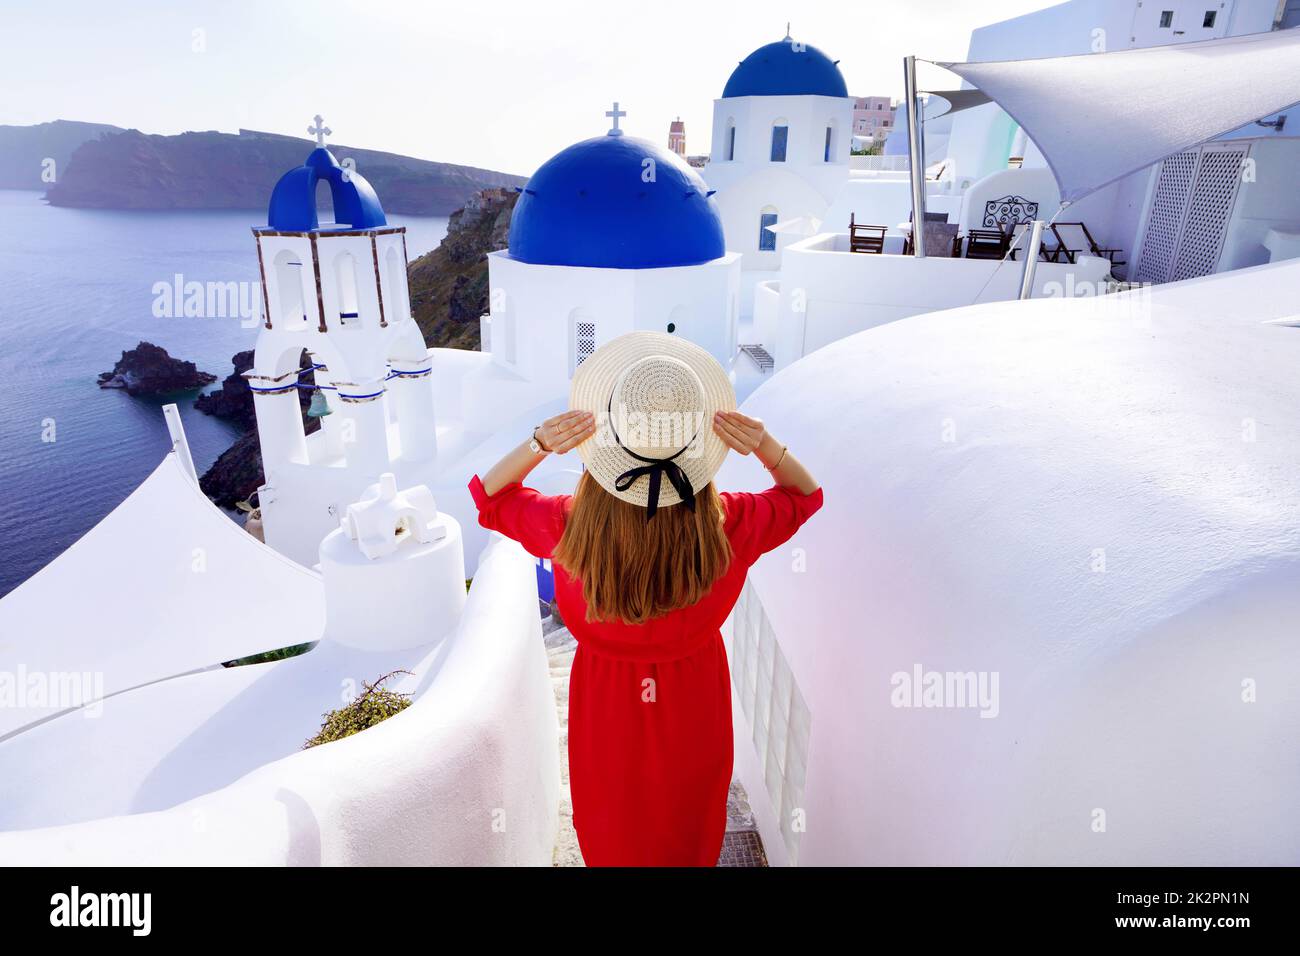 Vacanze a Santorini. Vista posteriore della donna viaggiatore scende scale nel tradizionale villaggio di Oia con cupole blu churces e con case sull'isola di Santorini. Foto Stock